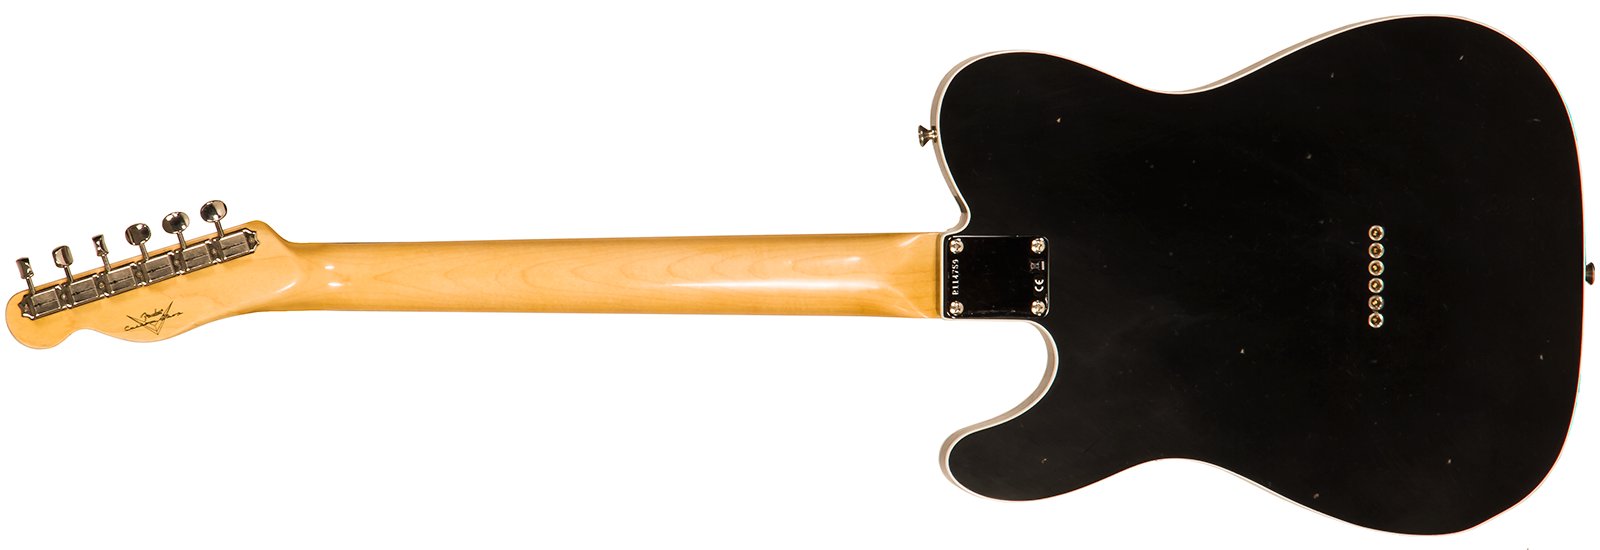 Fender Custom Shop Tele 1960 2s Ht Rw #r114759 - Journeyman Relic Black - Guitare Électrique Forme Tel - Variation 1